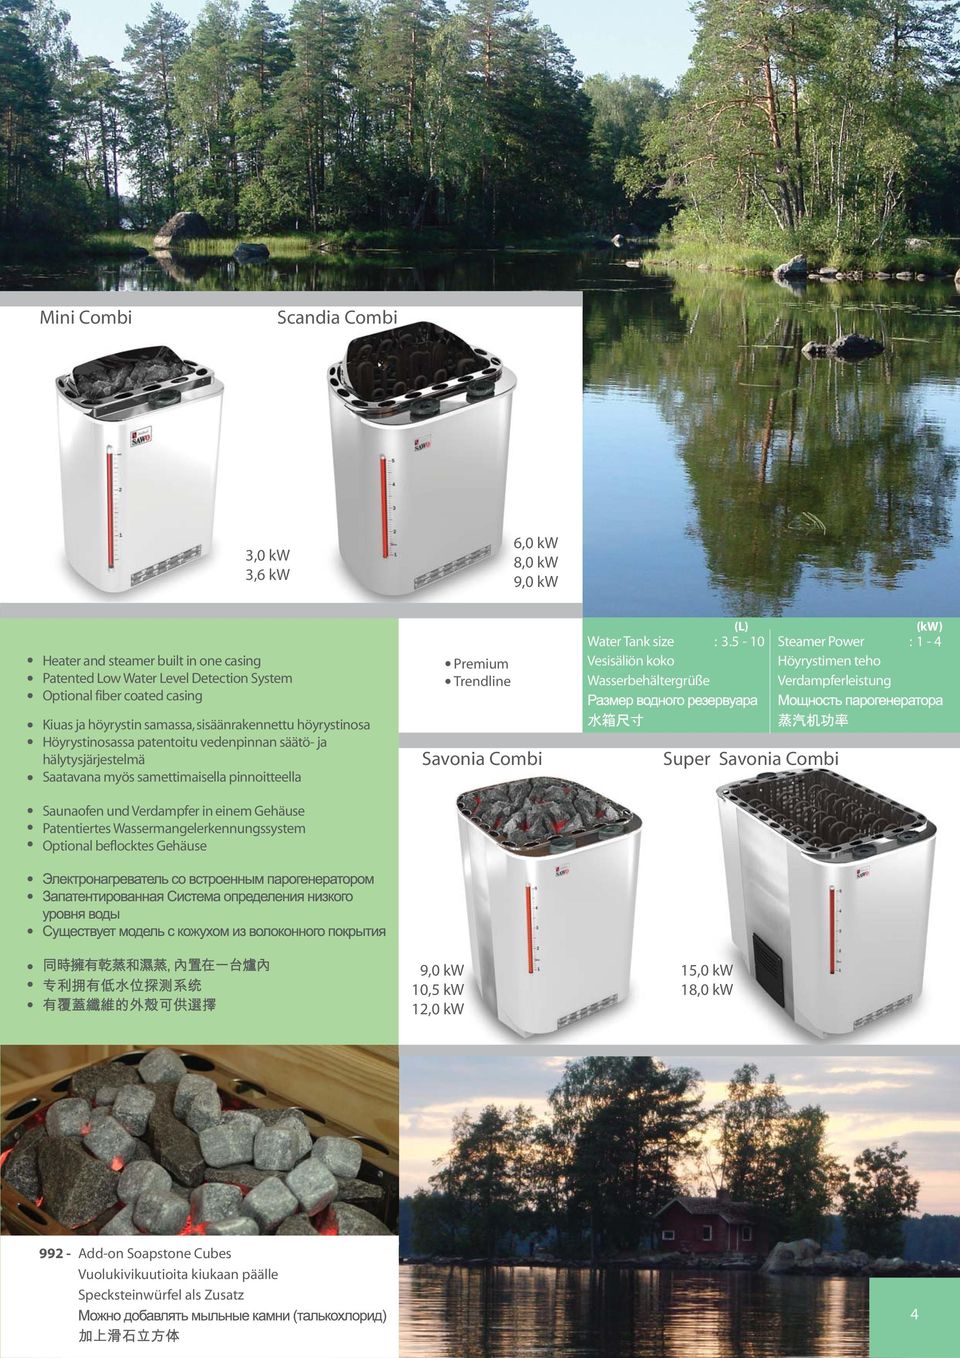 Patentiertes Wassermangelerkennungssystem Savonia Combi (L) () Water Tank size :.